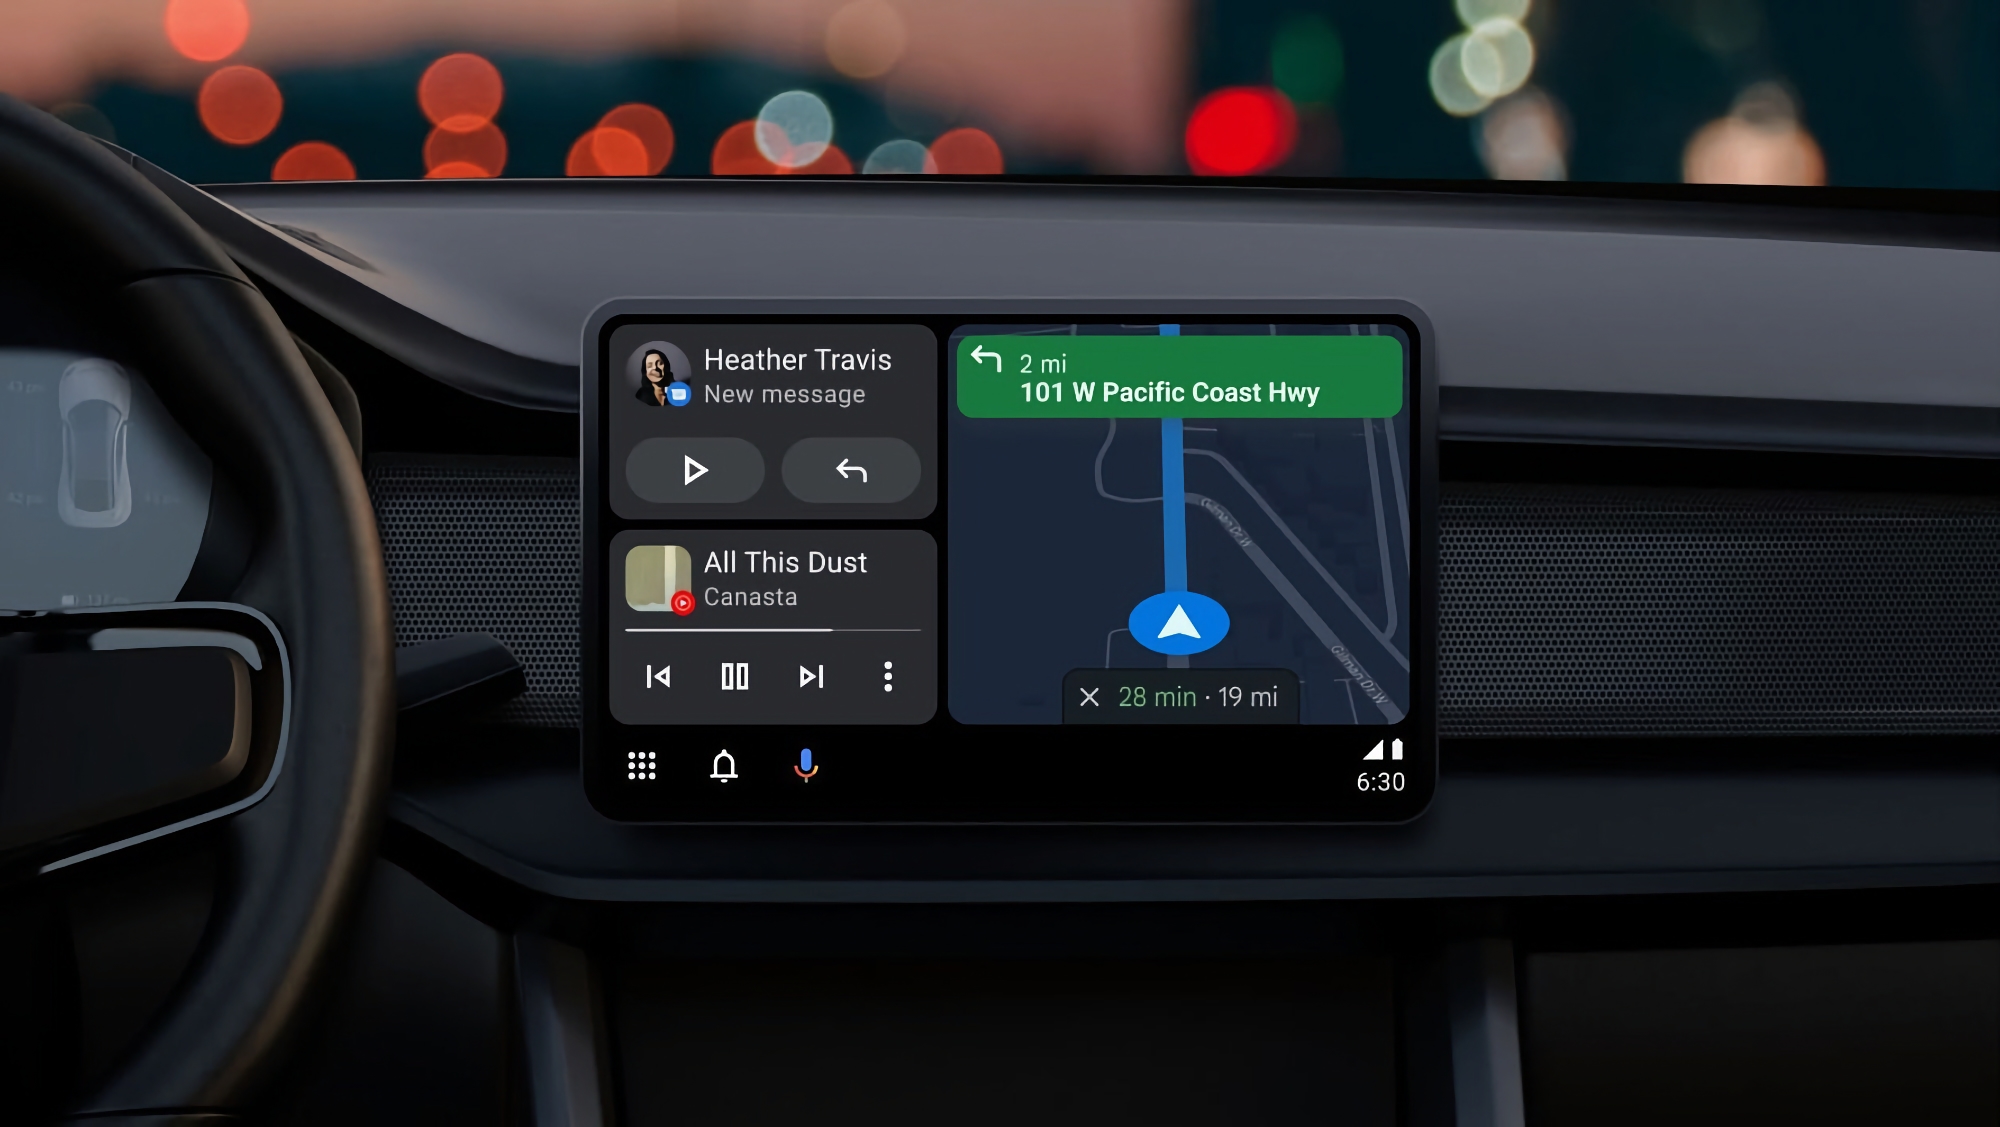 Honda ha anunciado una actualización que añade compatibilidad inalámbrica con Android Auto y Apple CarPlay a los vehículos Accord 2018-2022